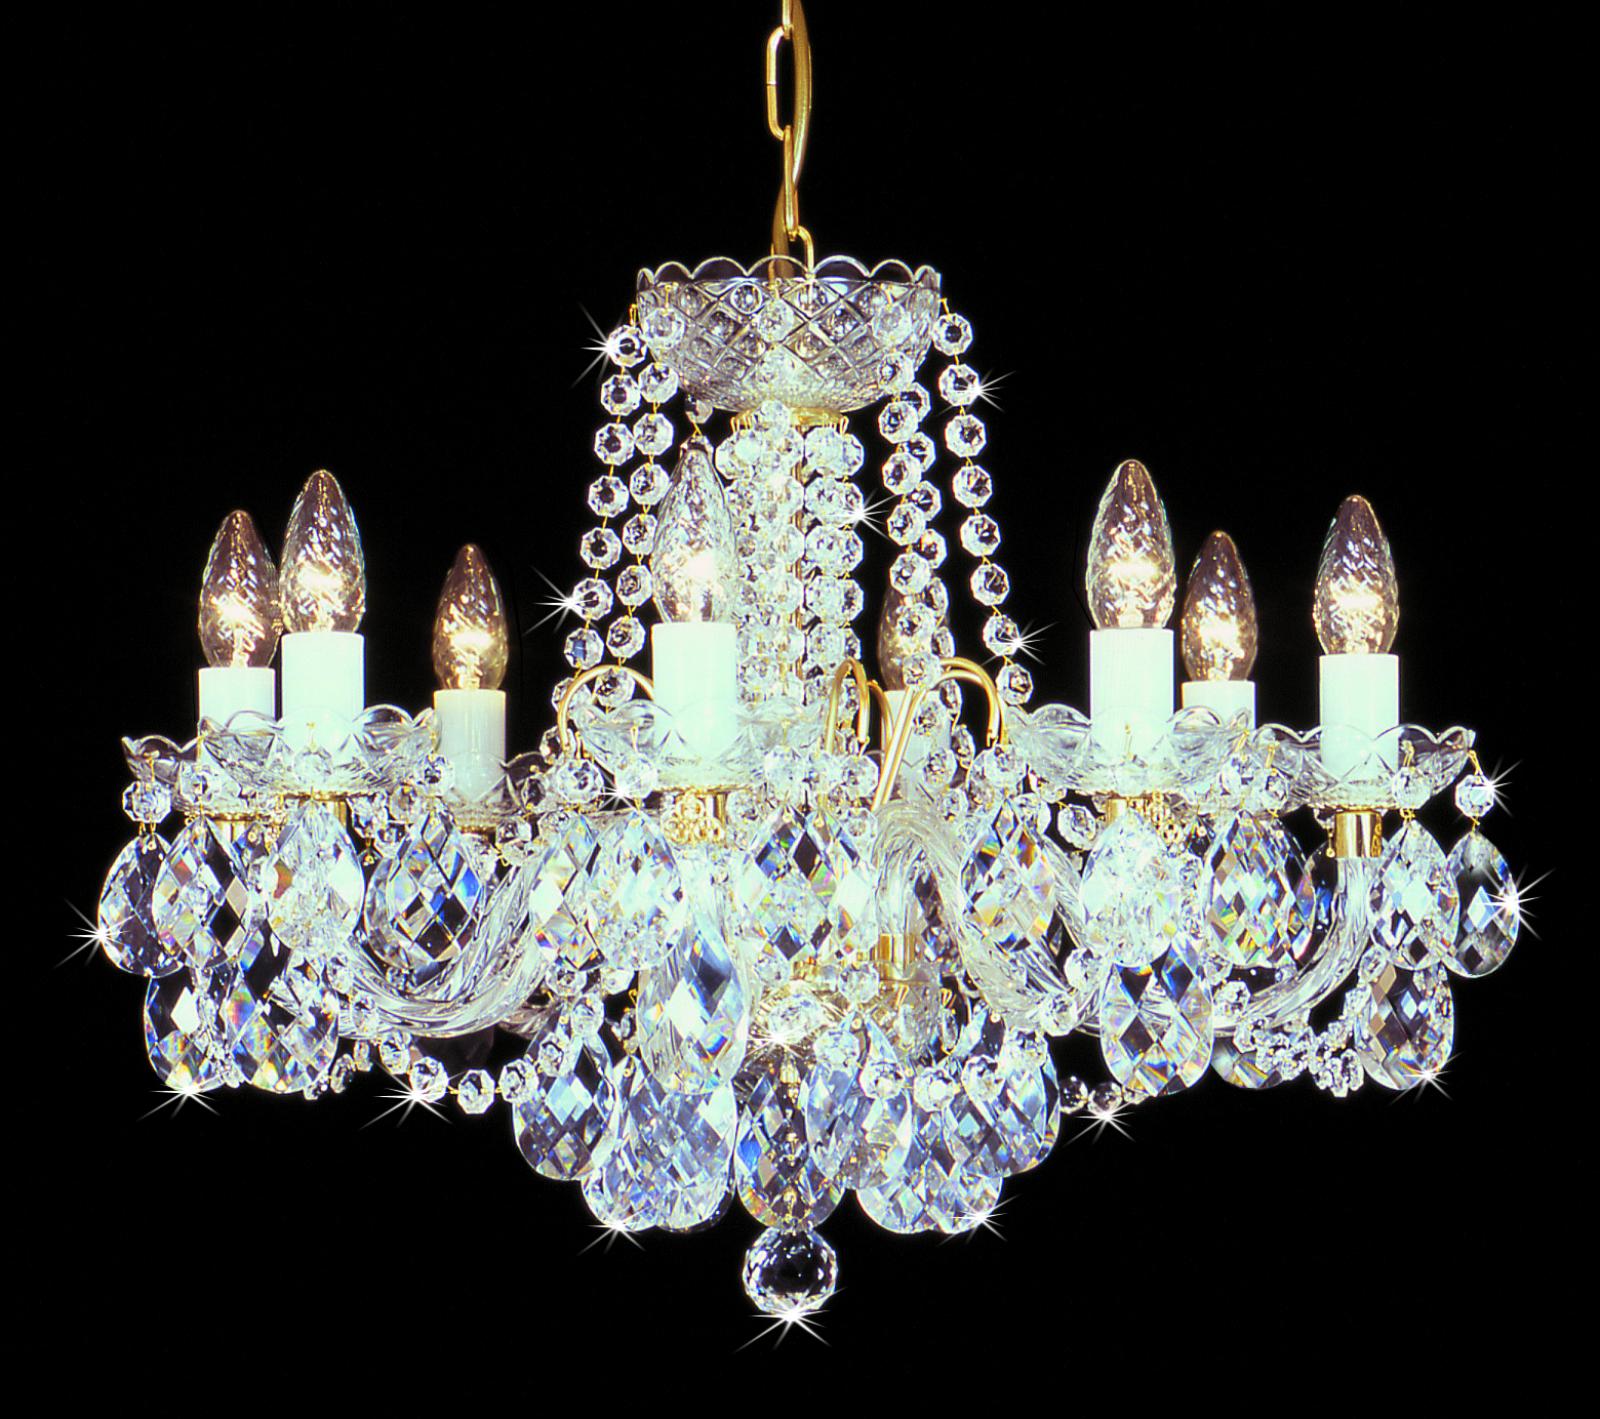 Kristall Kronleuchter - Crystal chandelier EX4078 08HK-505-1SW